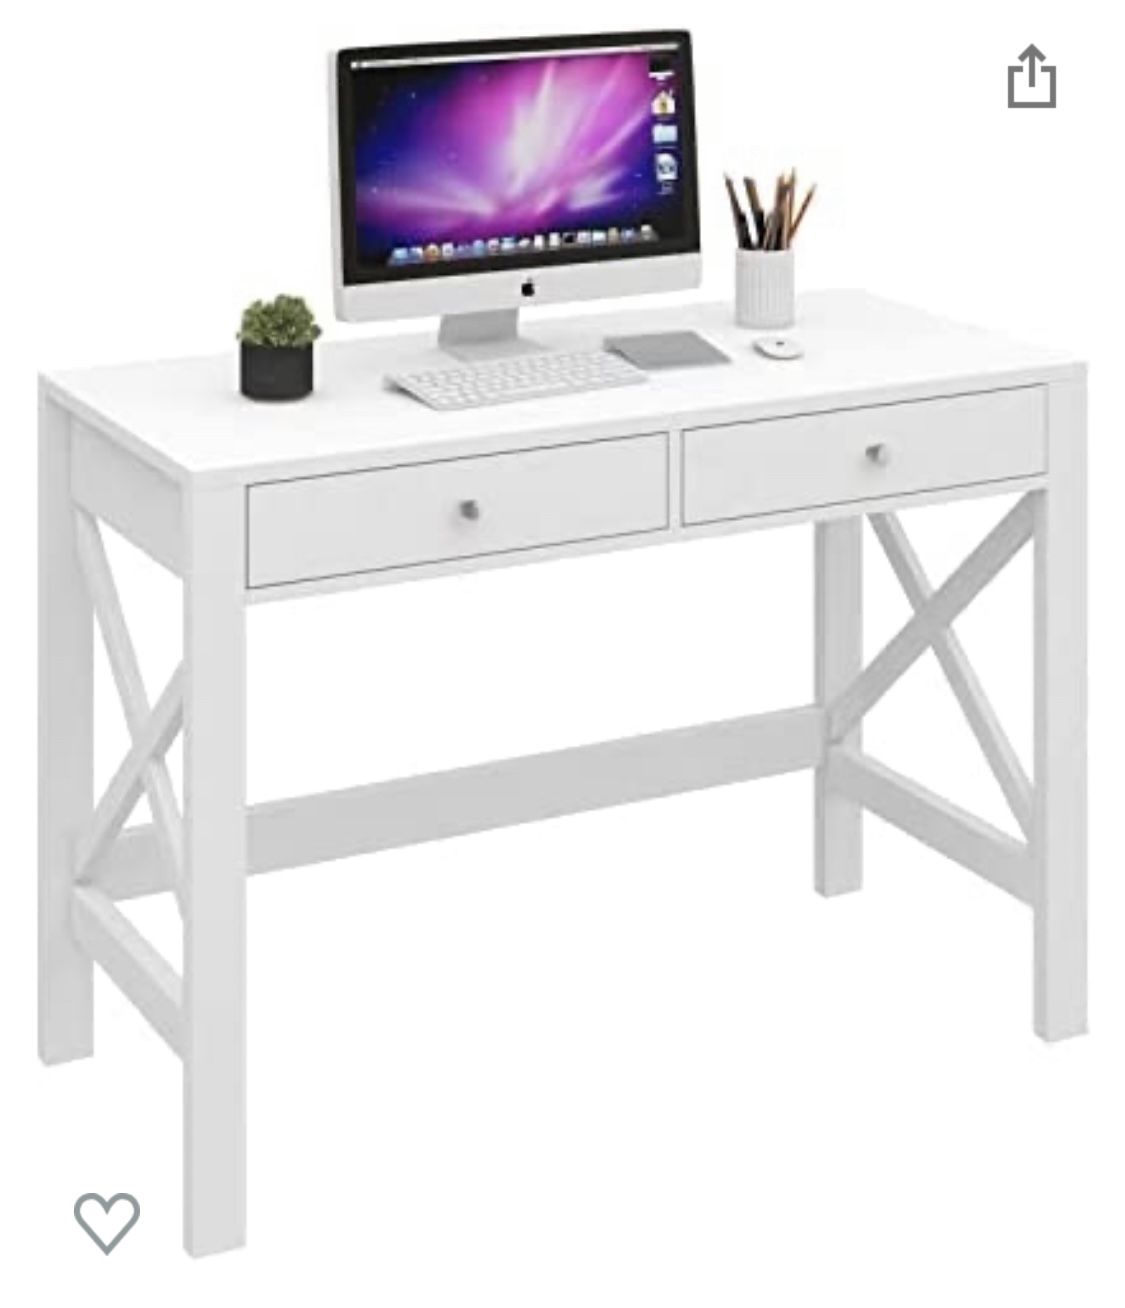 New White Desk